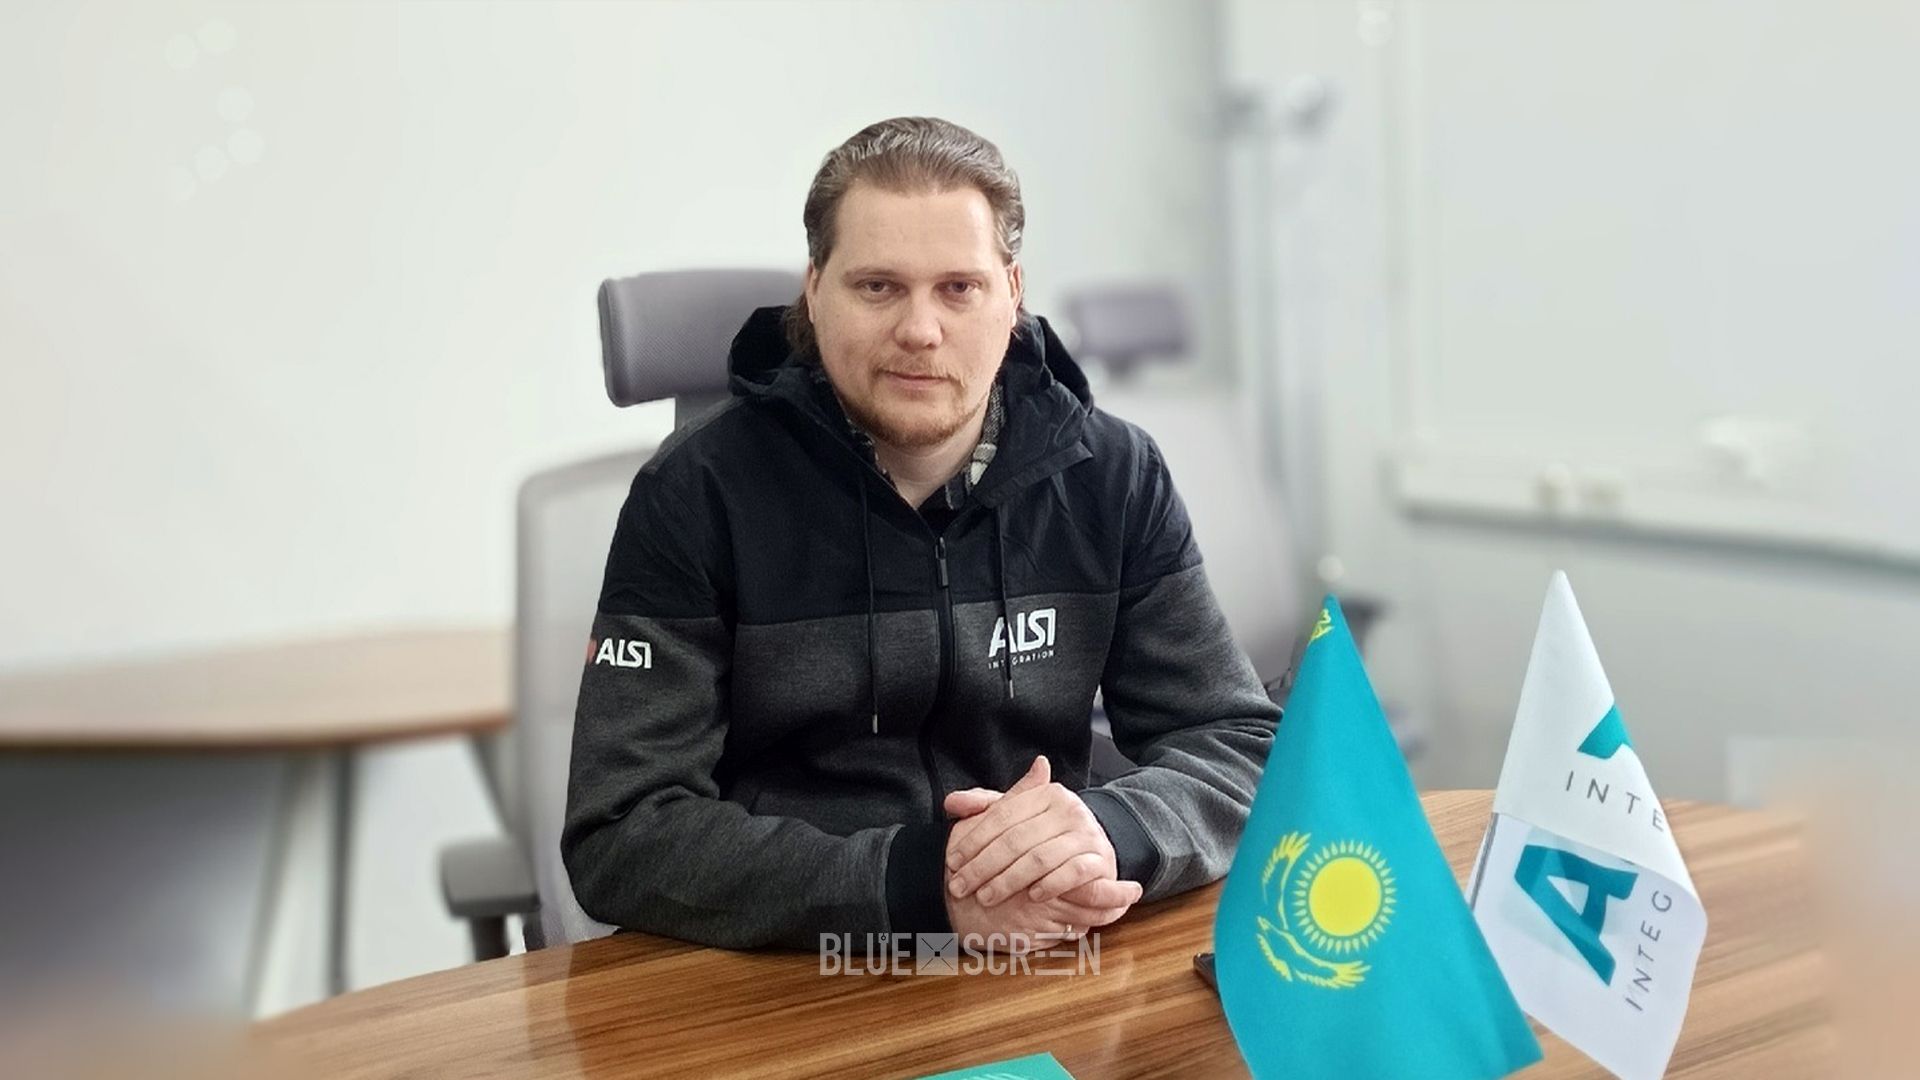  Александр Васильев, project-менеджер отдела развития CRM и интернет-проектов ALSI